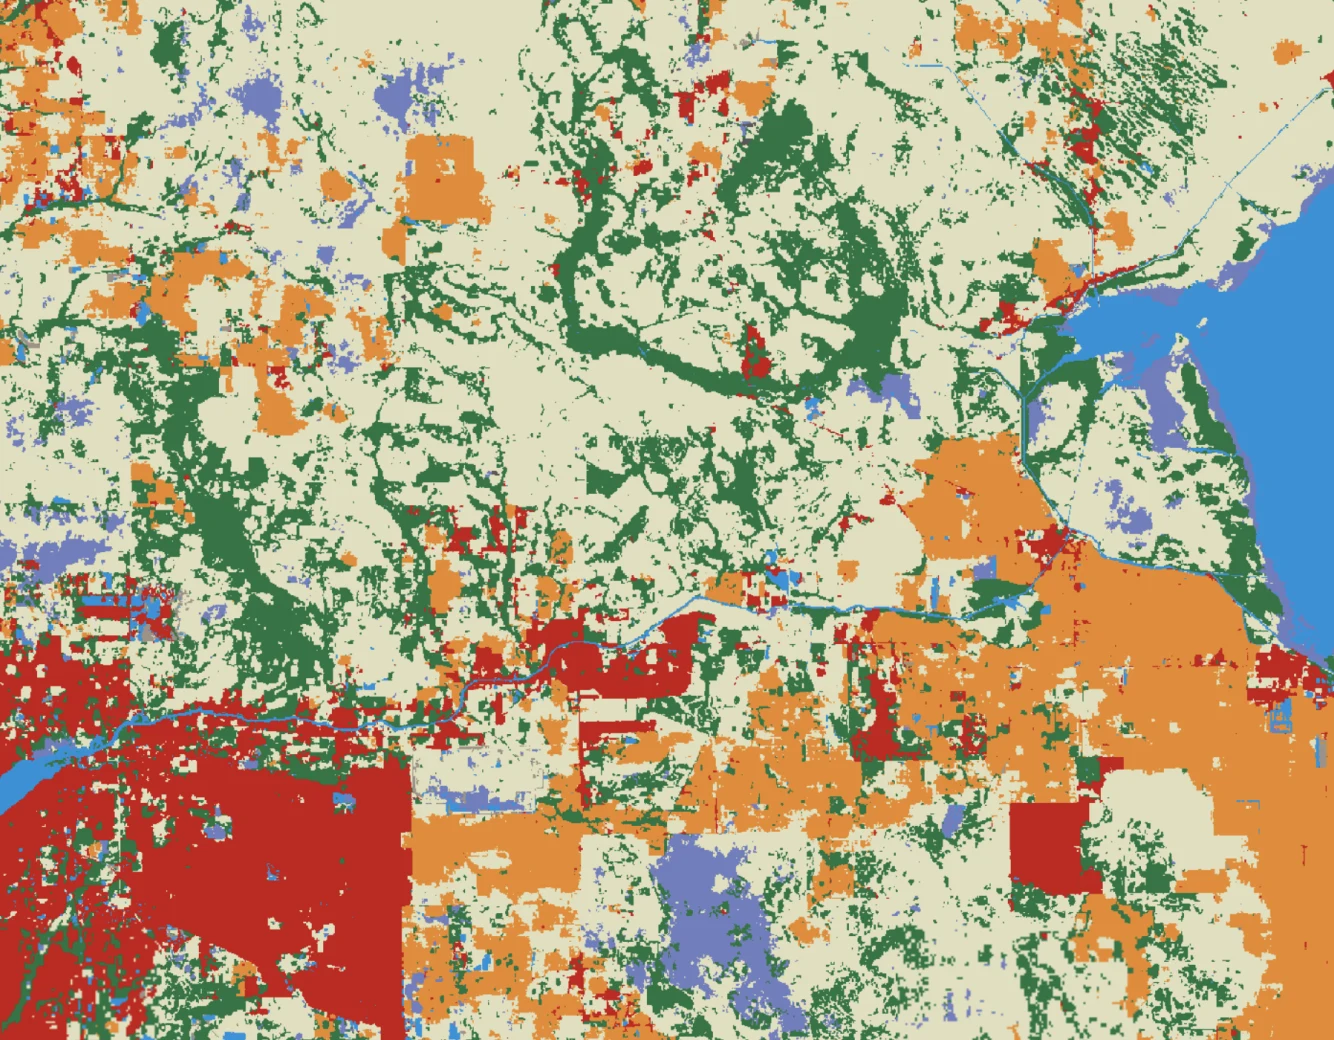 Land Use Map